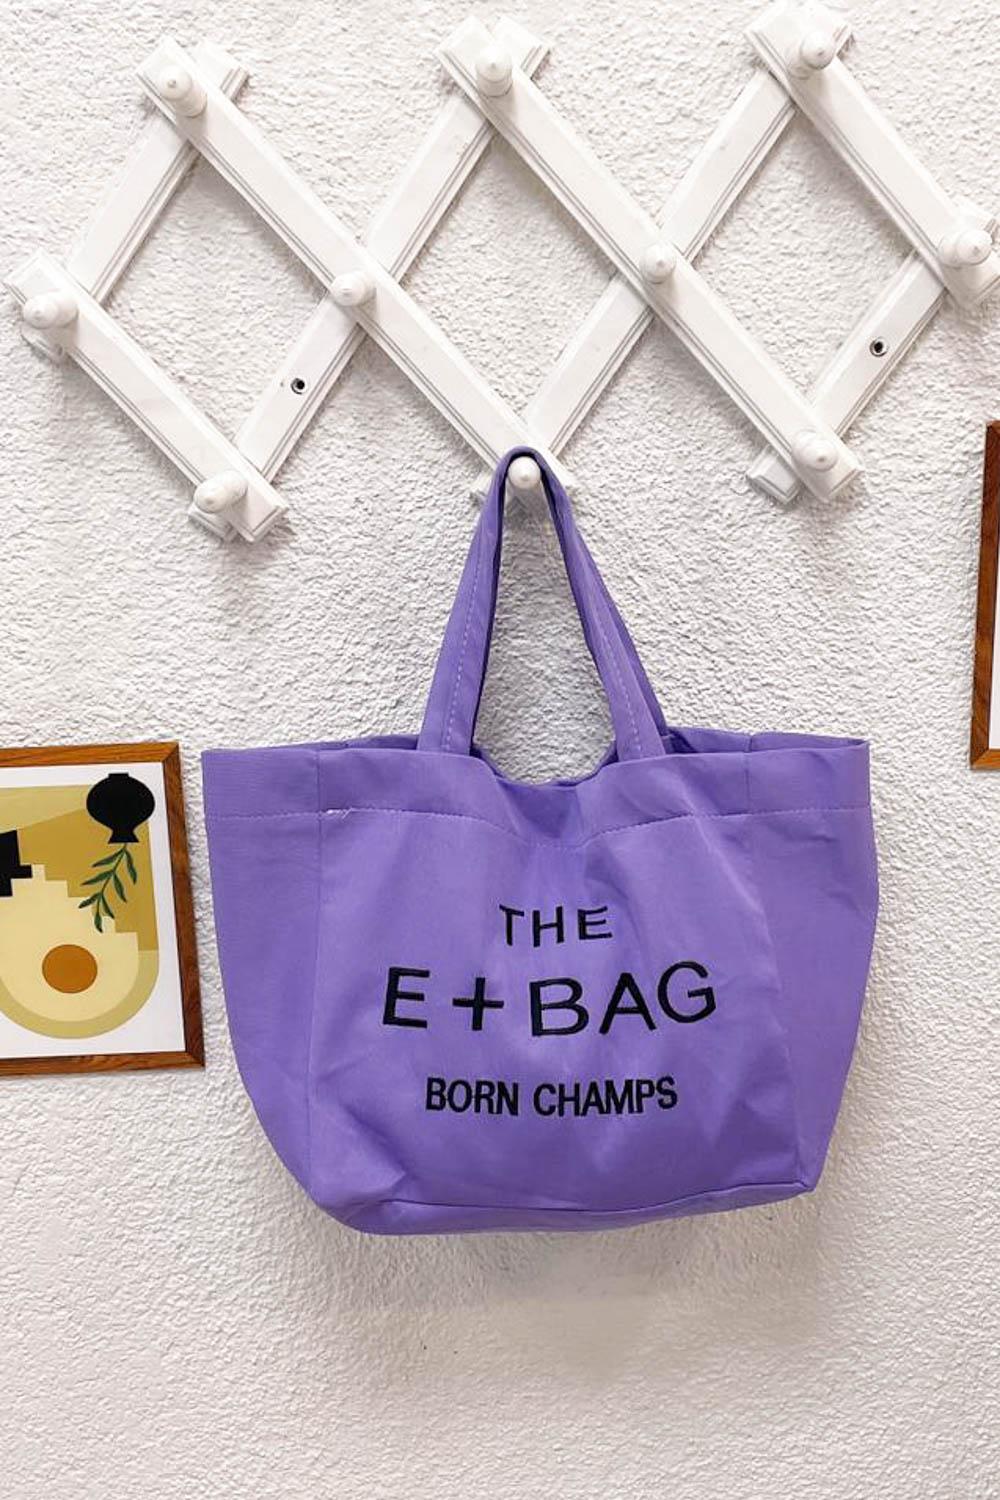 THE +BAG